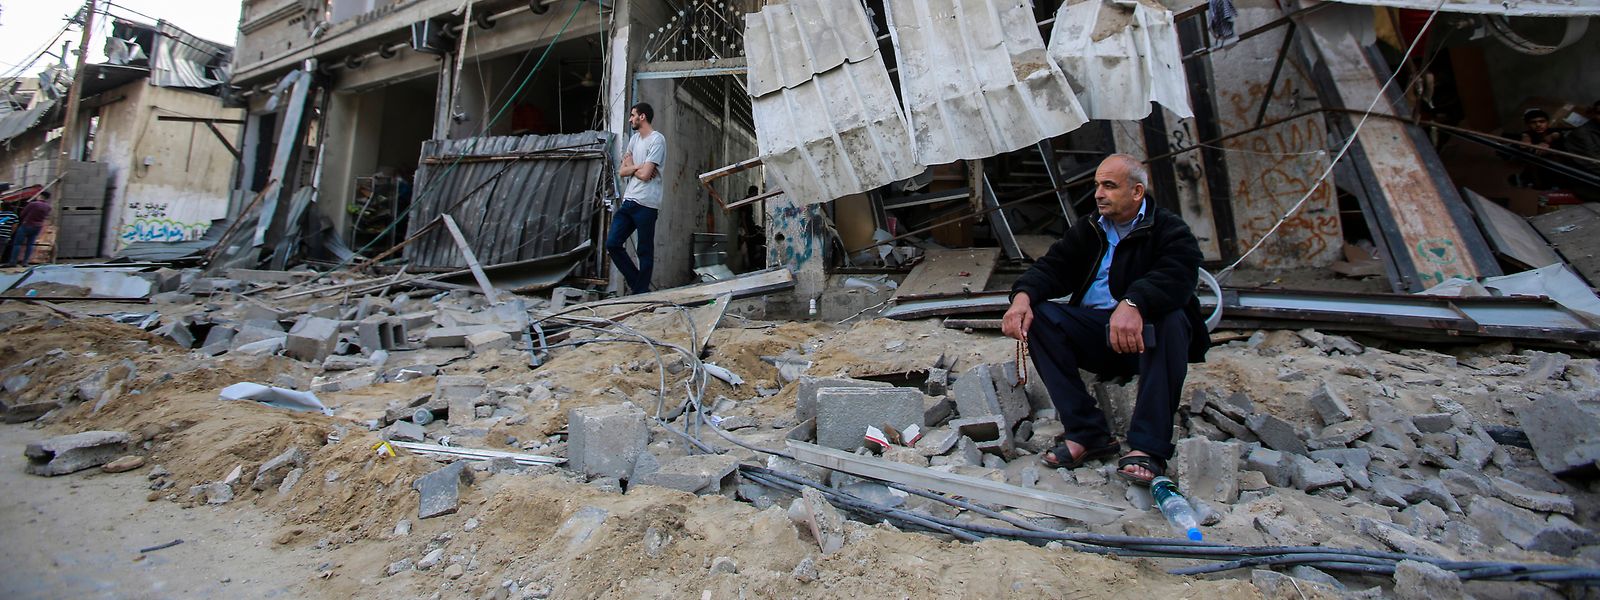 Ein palästinensischer Mann sitzt vor seinem zerstörten Haus nach israelischen Luftangriffen im Flüchtlingslager Jabaliya.